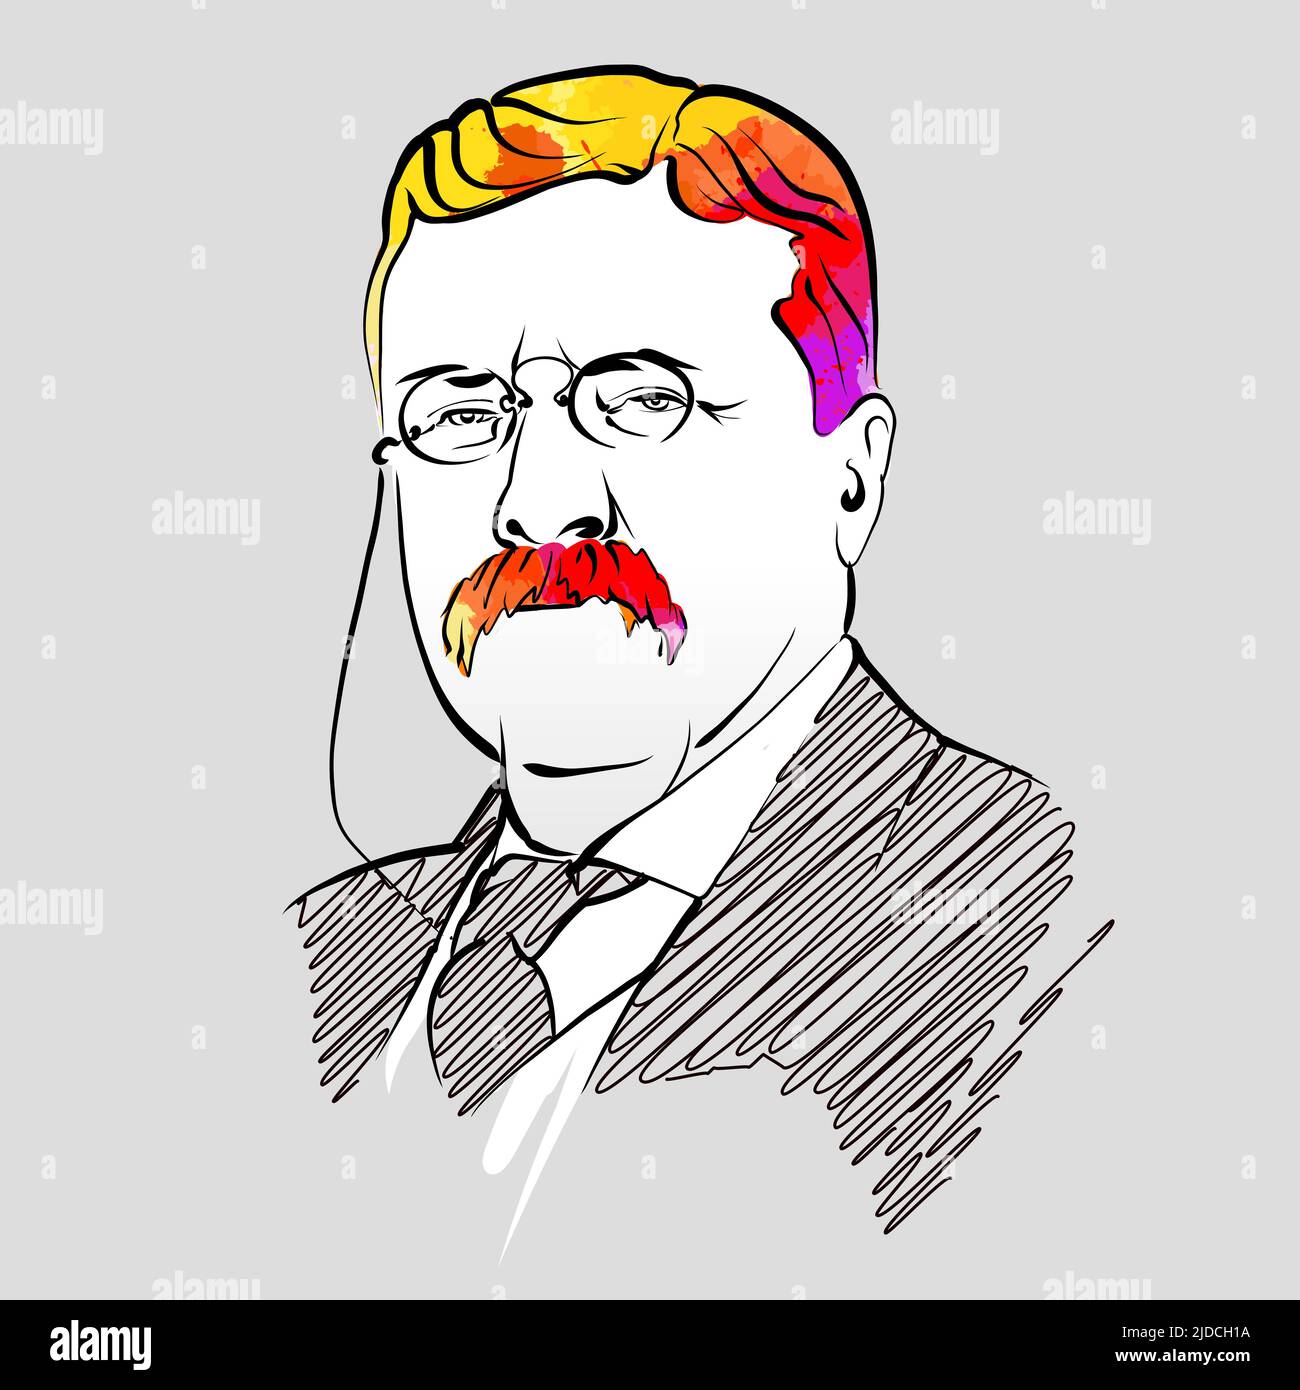 Theodore Roosevelt disegno vettoriale colorato dei capelli. Schizzo del contorno disegnato a mano. Disegno da utilizzare su qualsiasi progetto di marketing e per la rivendita come stampa. Illustrazione Vettoriale